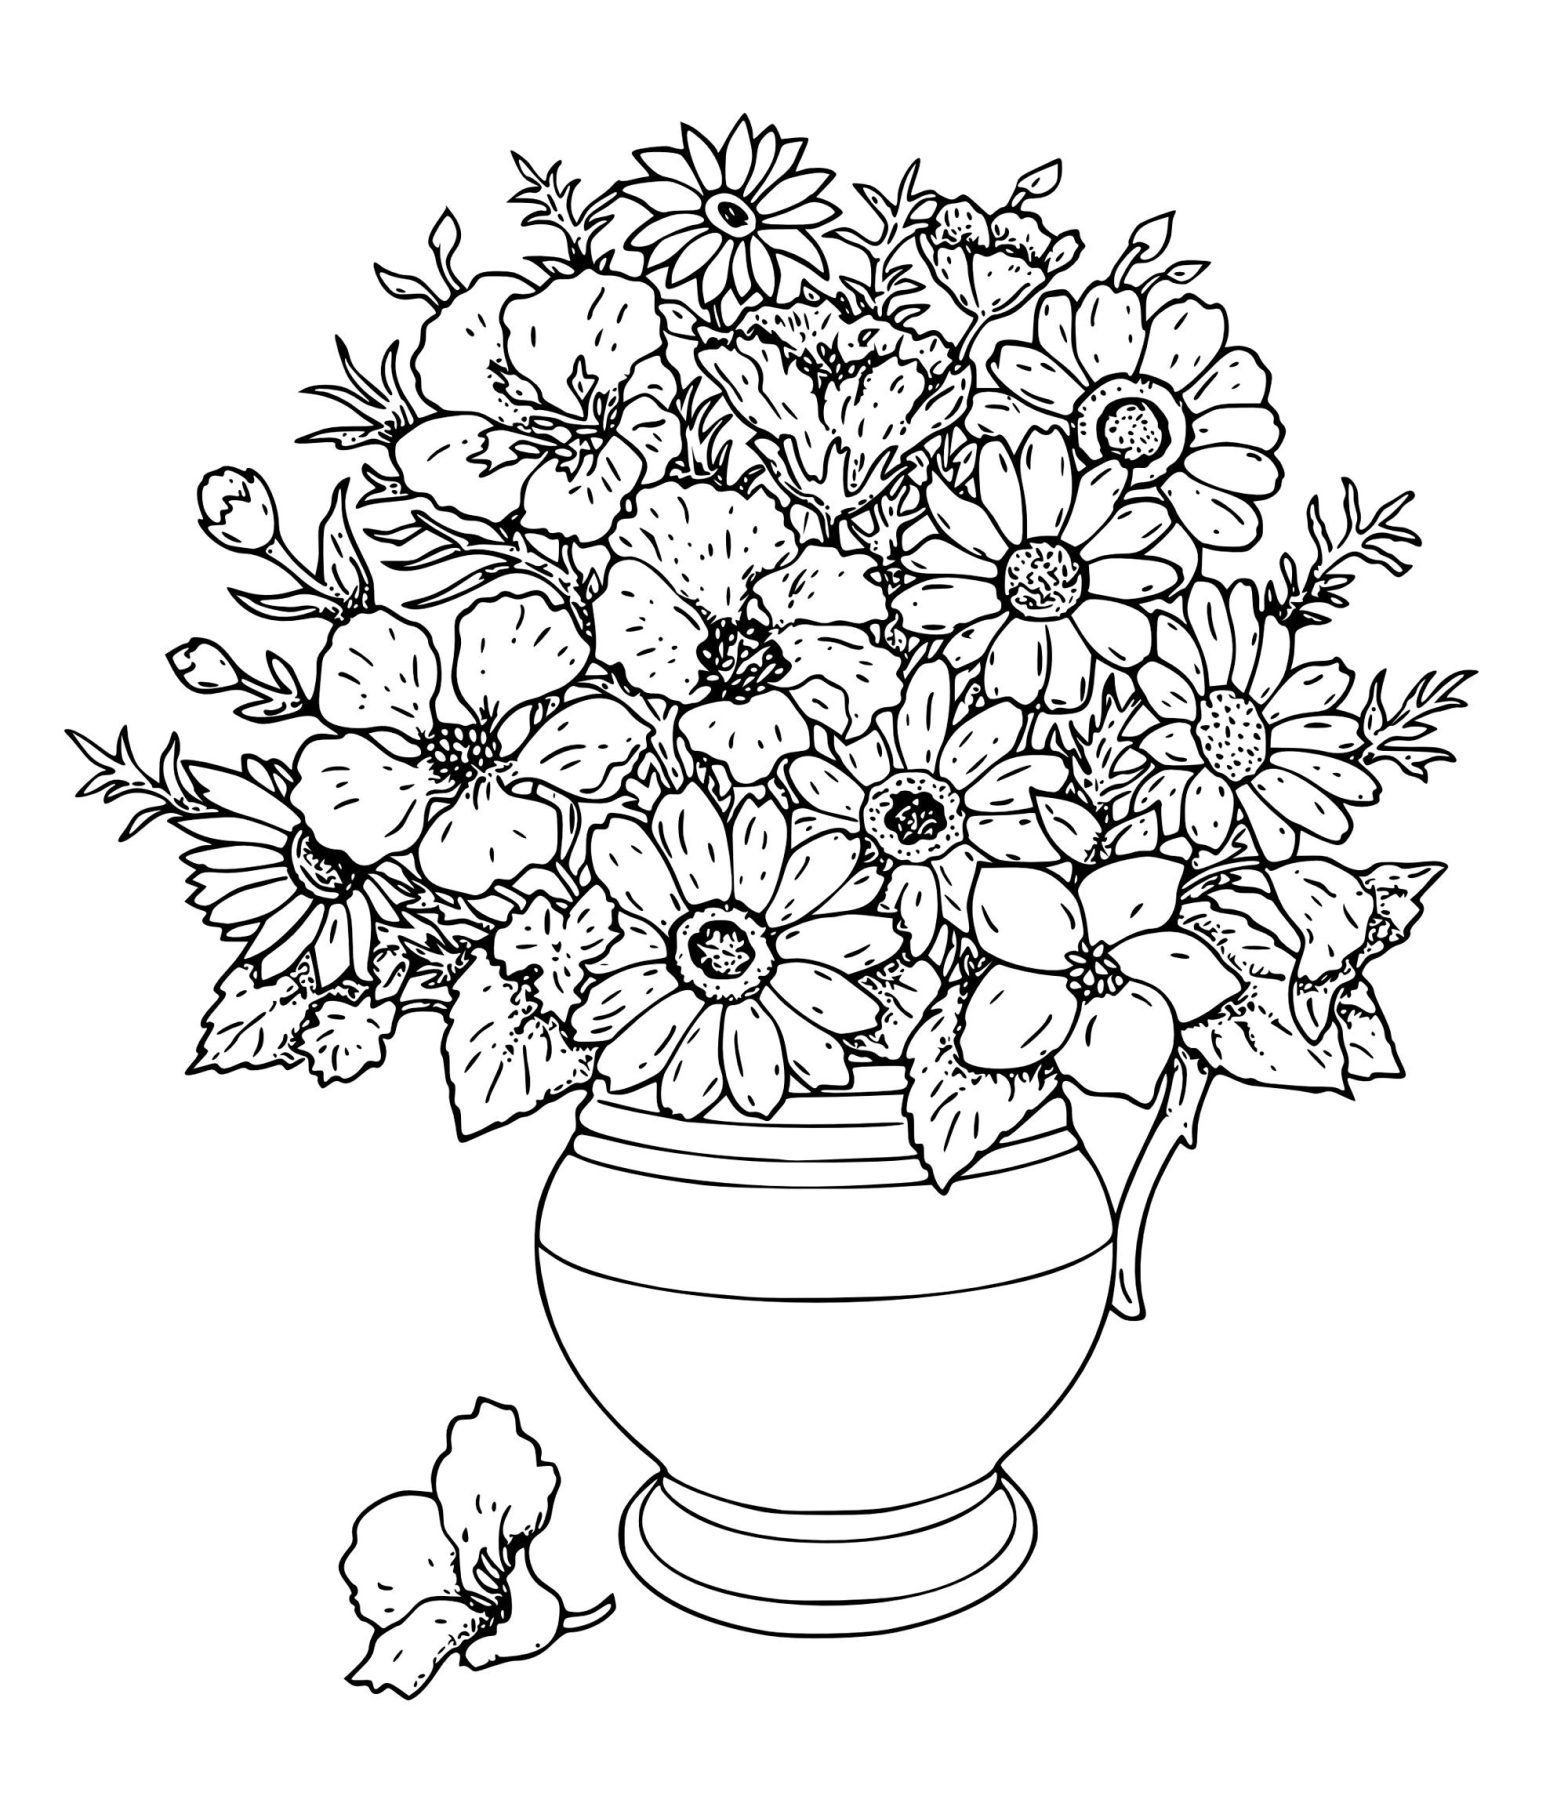 Раскрашенная ваза с цветами (ваза)